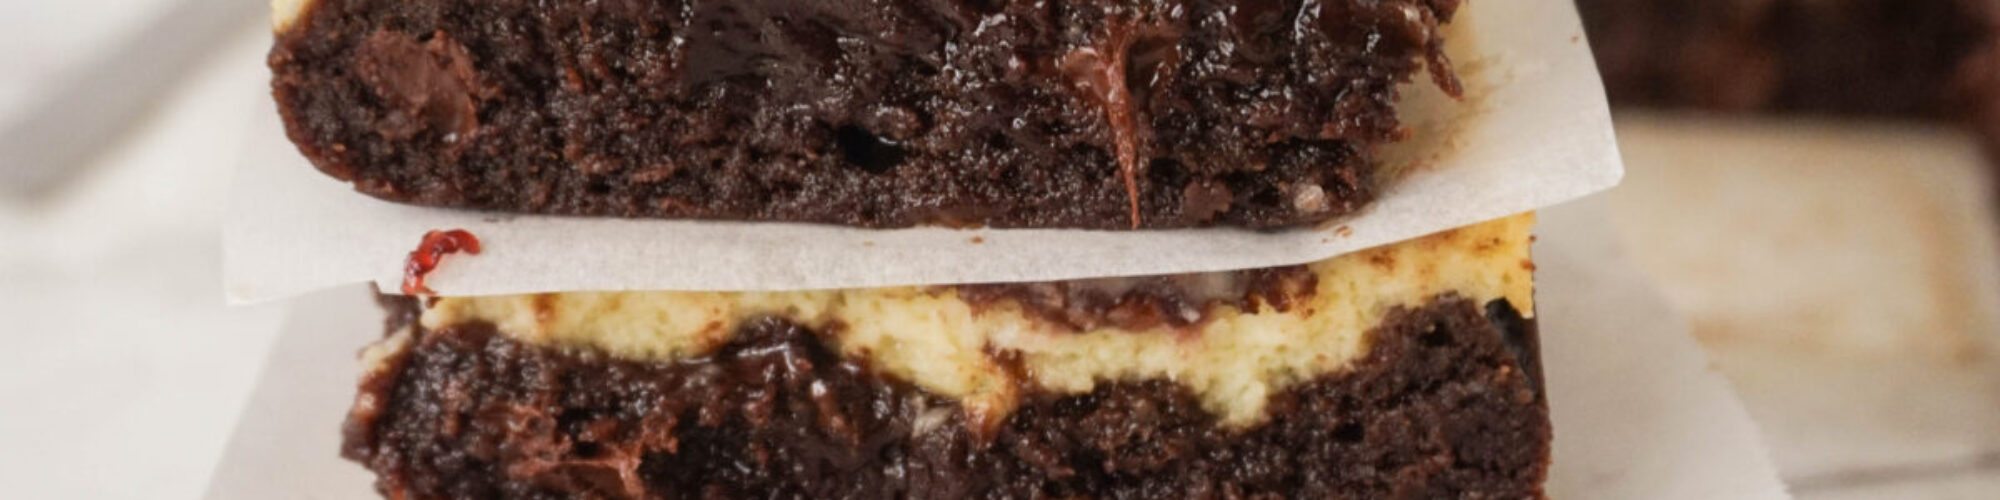 cheesecake brownies